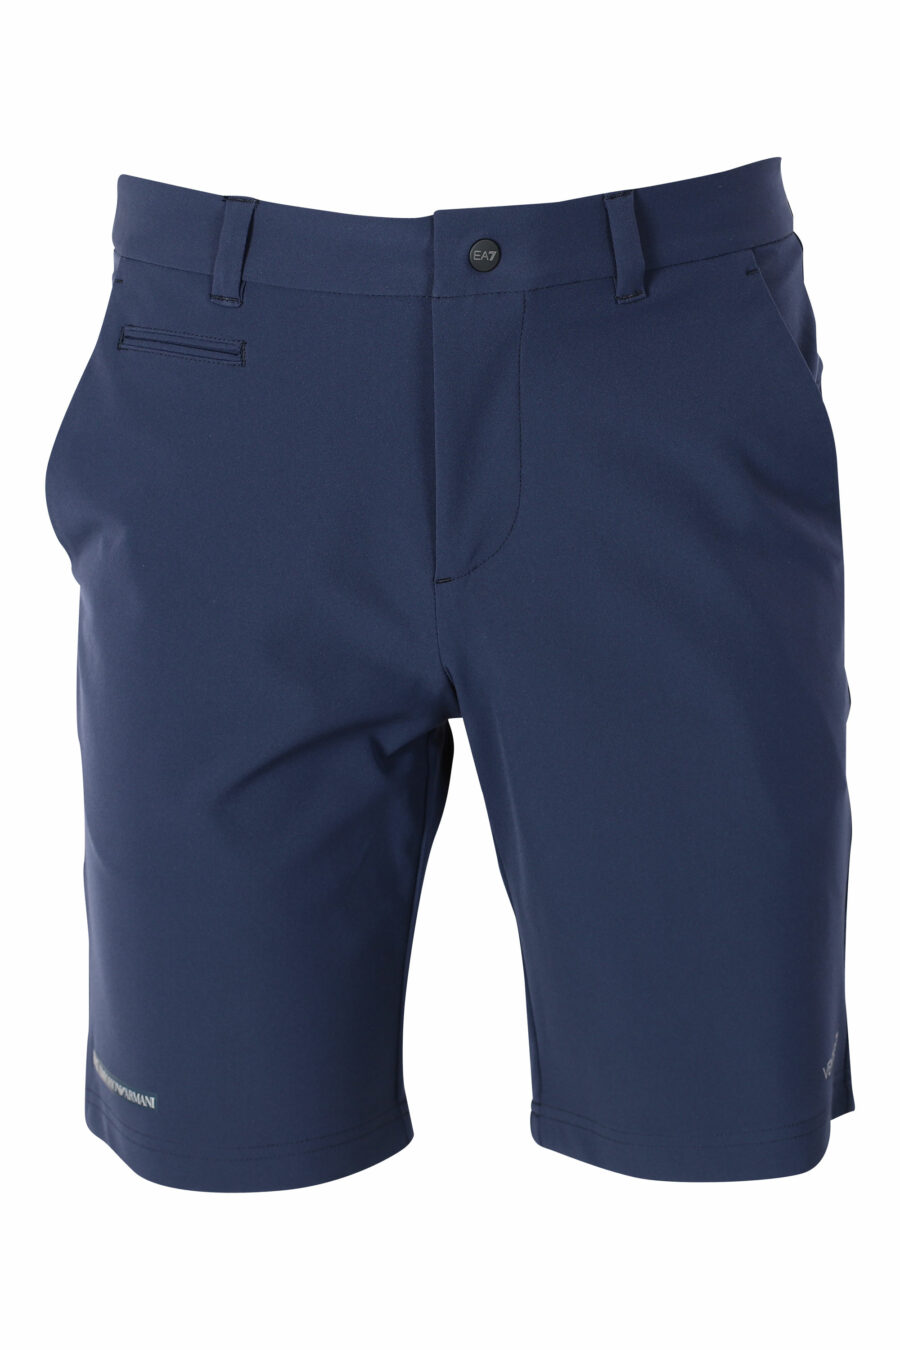 Pantalón azul oscuro corto con minilogo - IMG 9570